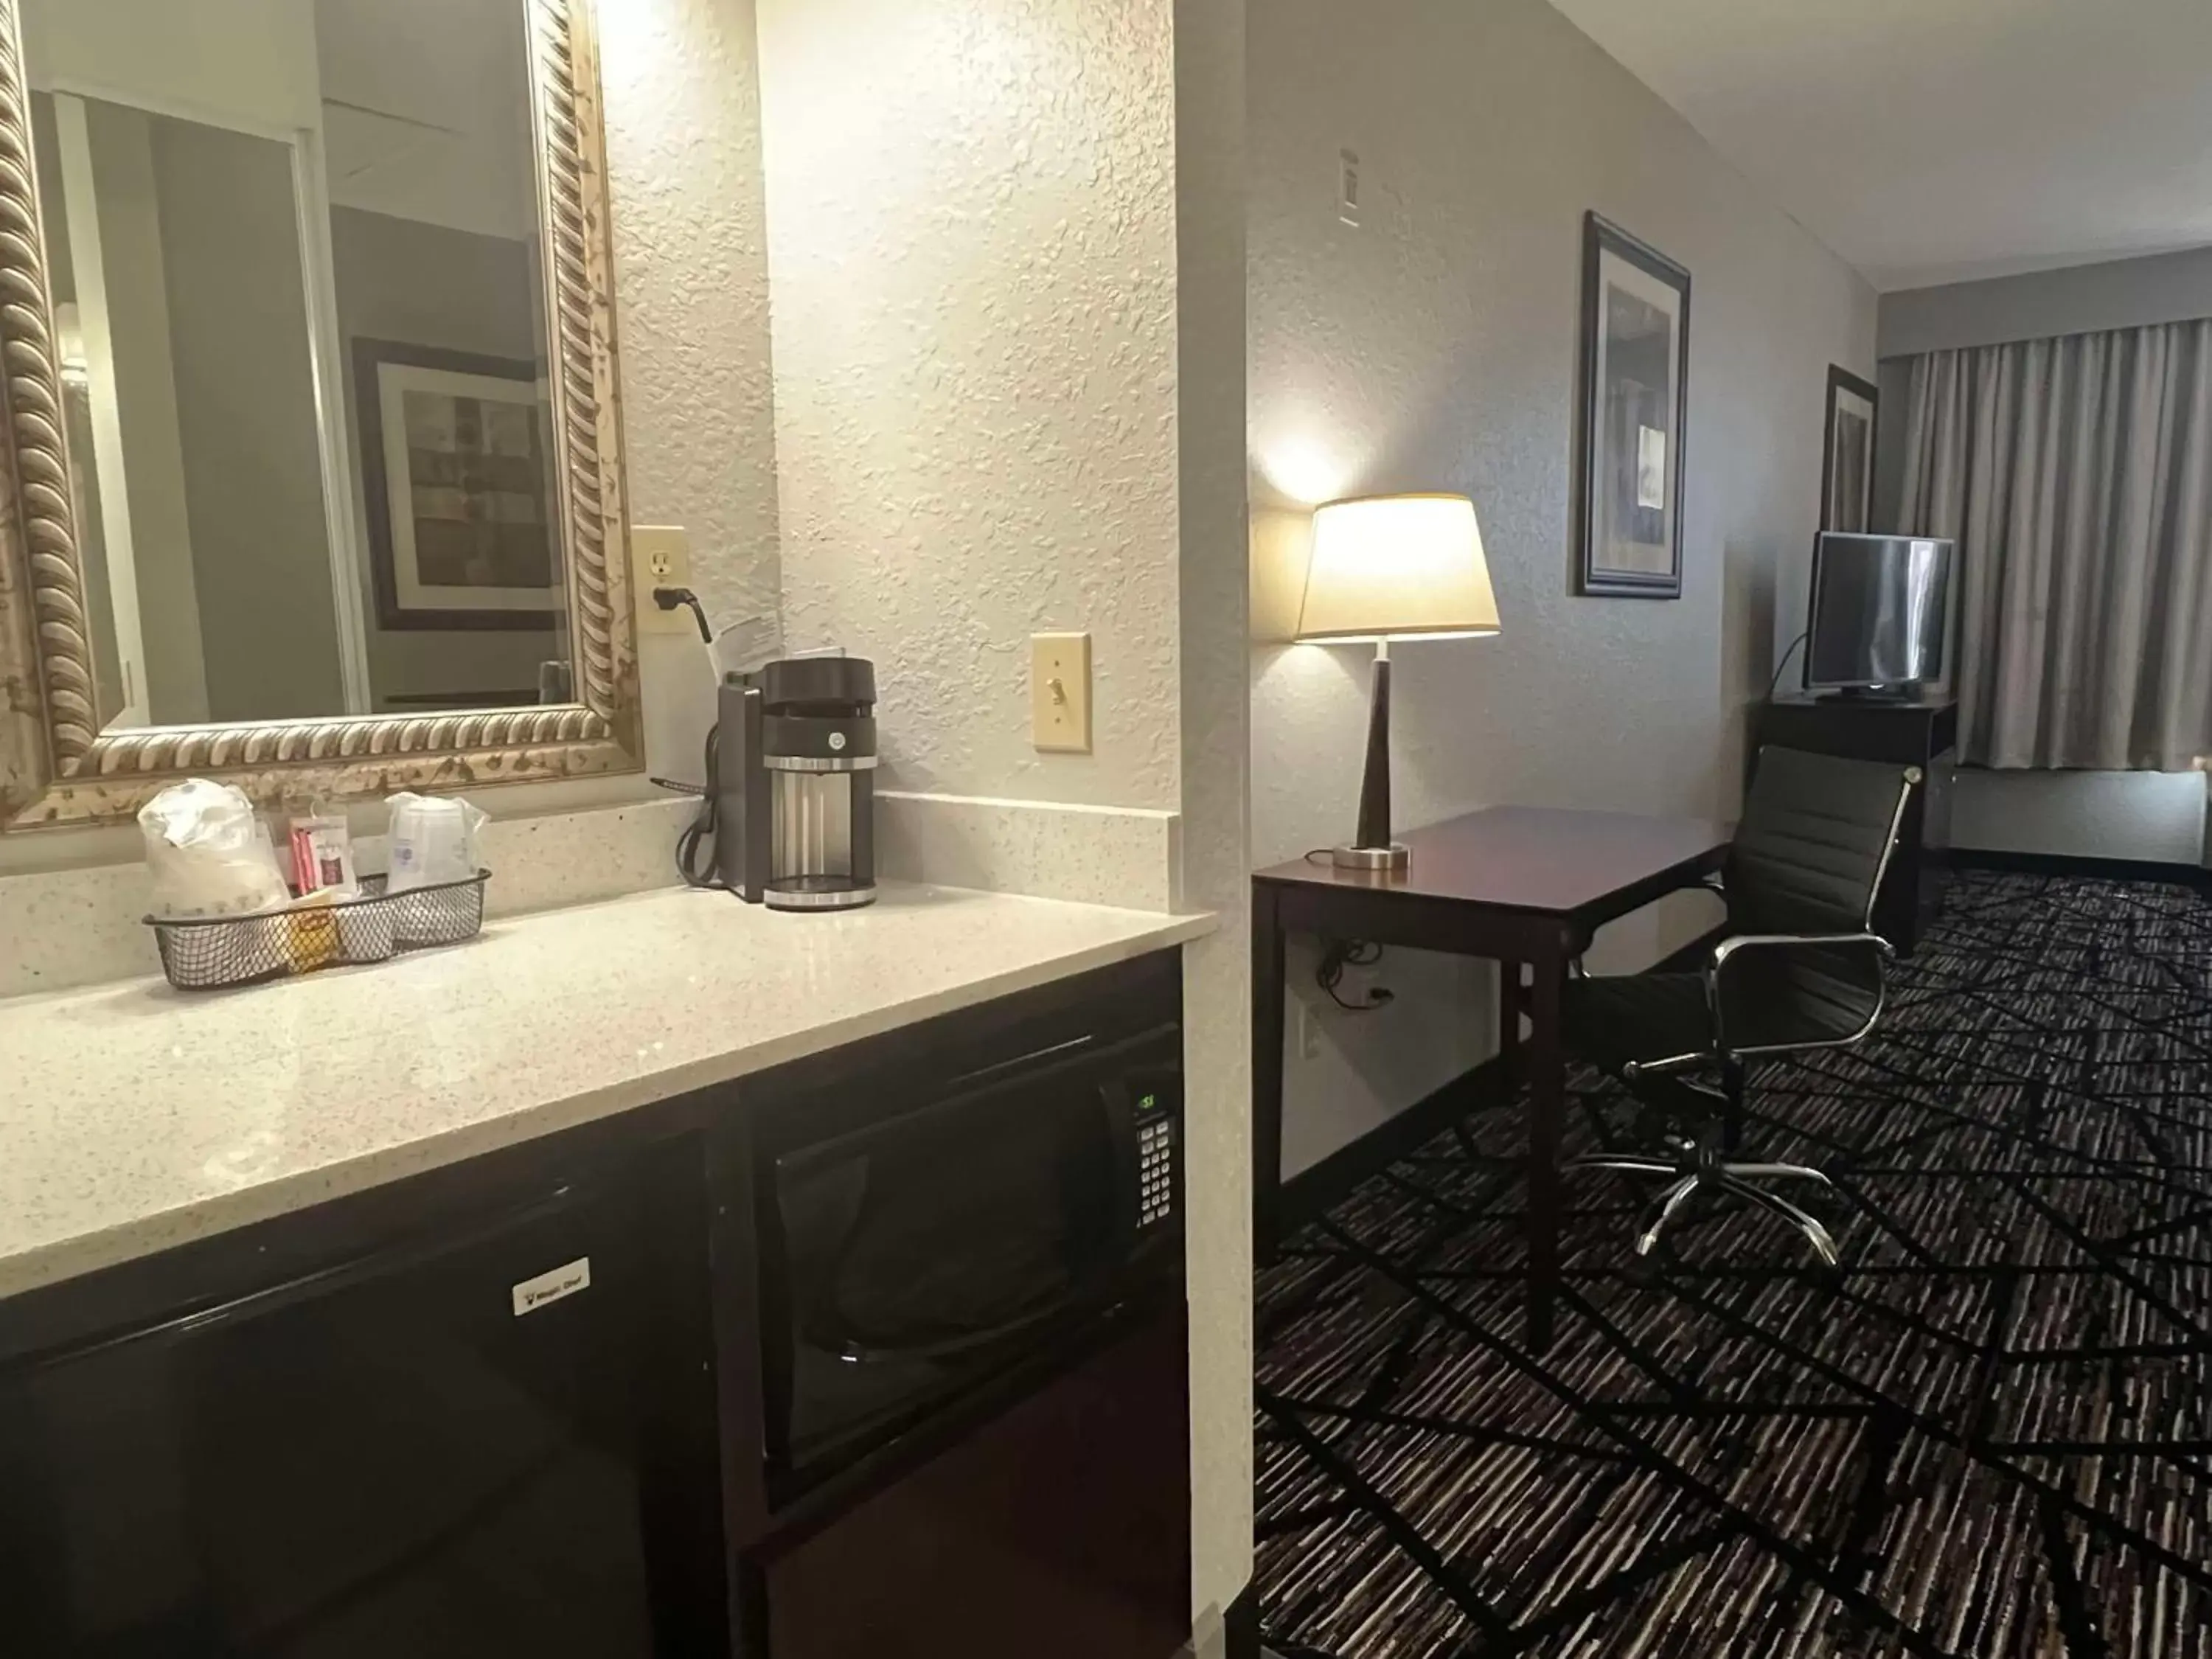 Bedroom, Bathroom in Best Western PLUS Hobby Airport Inn and Suites